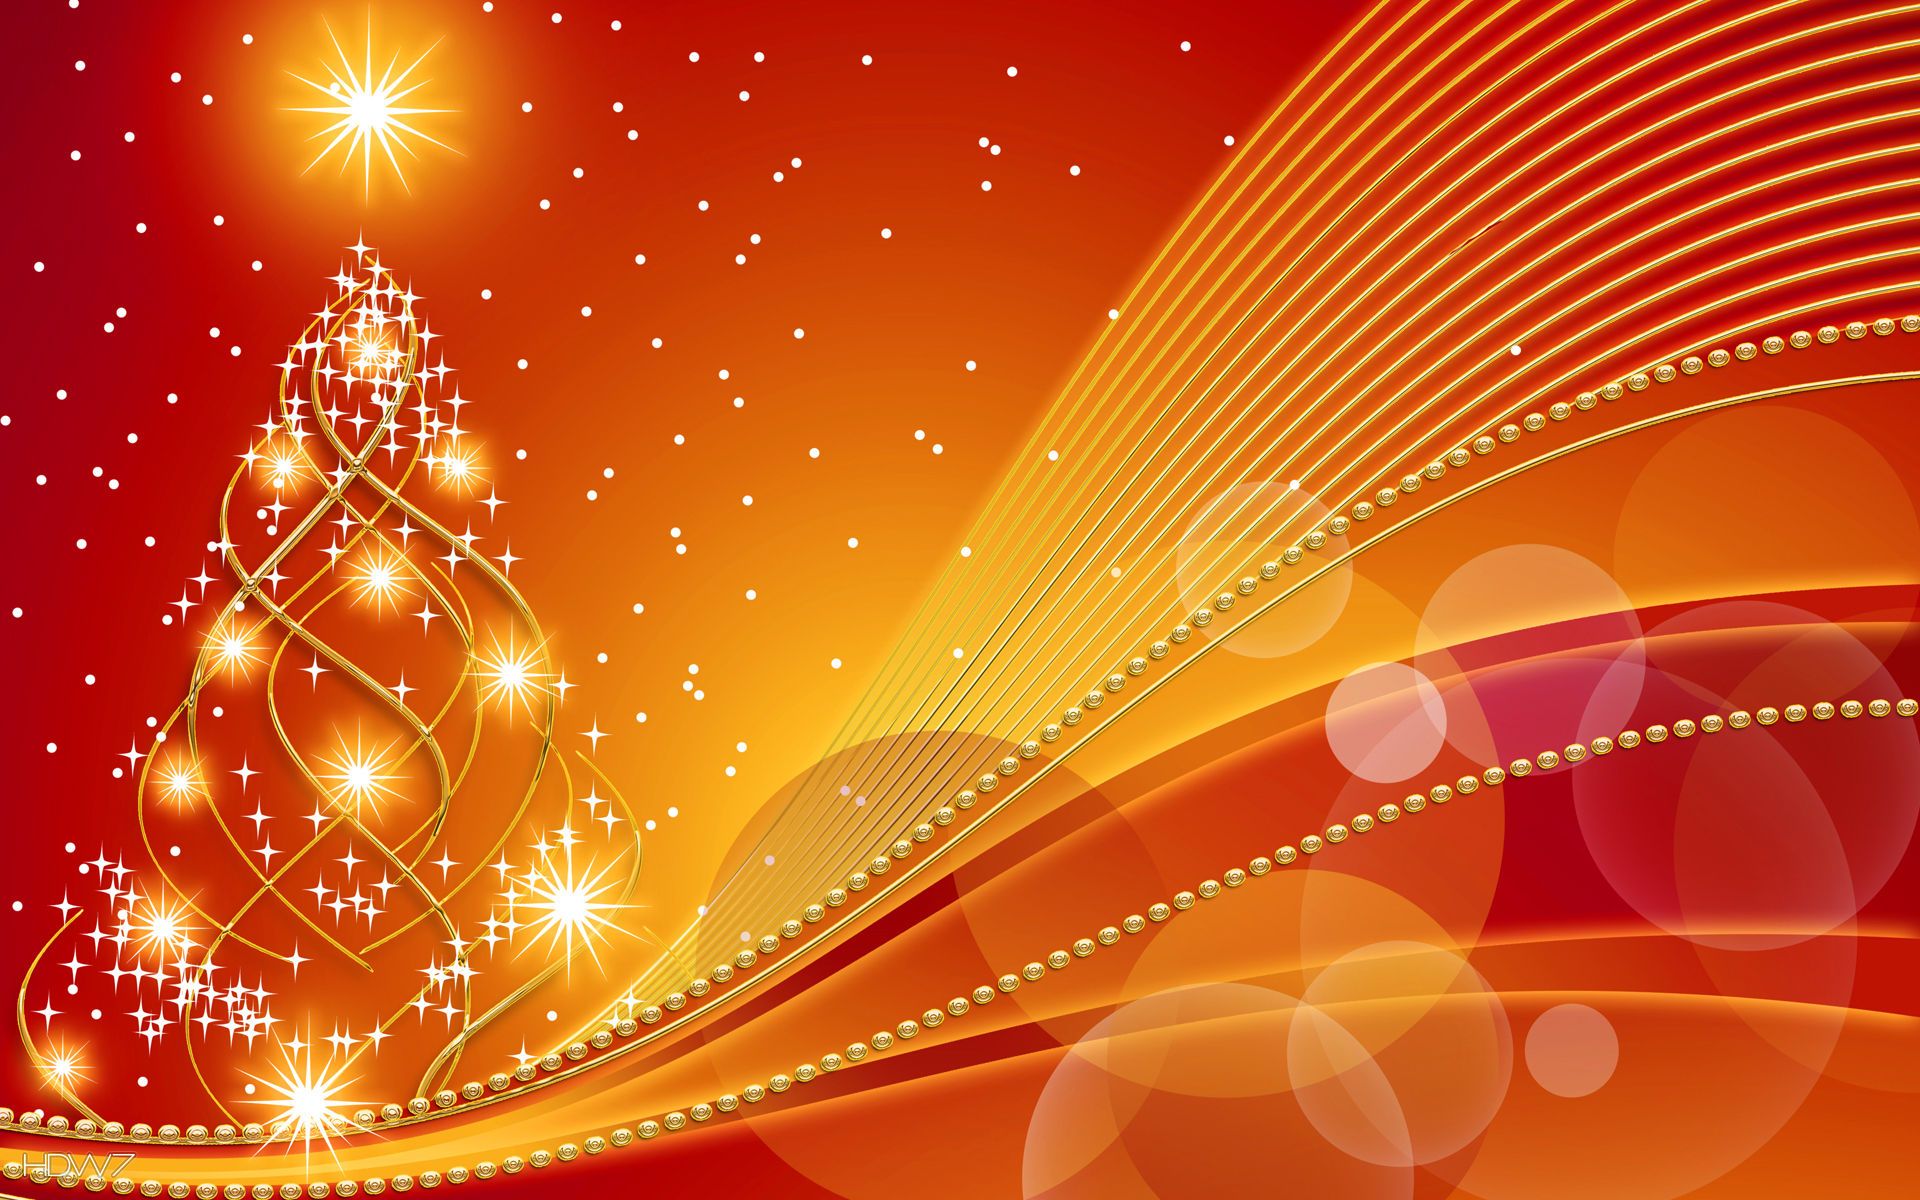 Hình nền Giáng sinh màu cam: Đừng bỏ lỡ những hình nền Giáng sinh đầy sắc màu này, đặc biệt là những bức ảnh với hình ảnh quả cam tươi sáng.